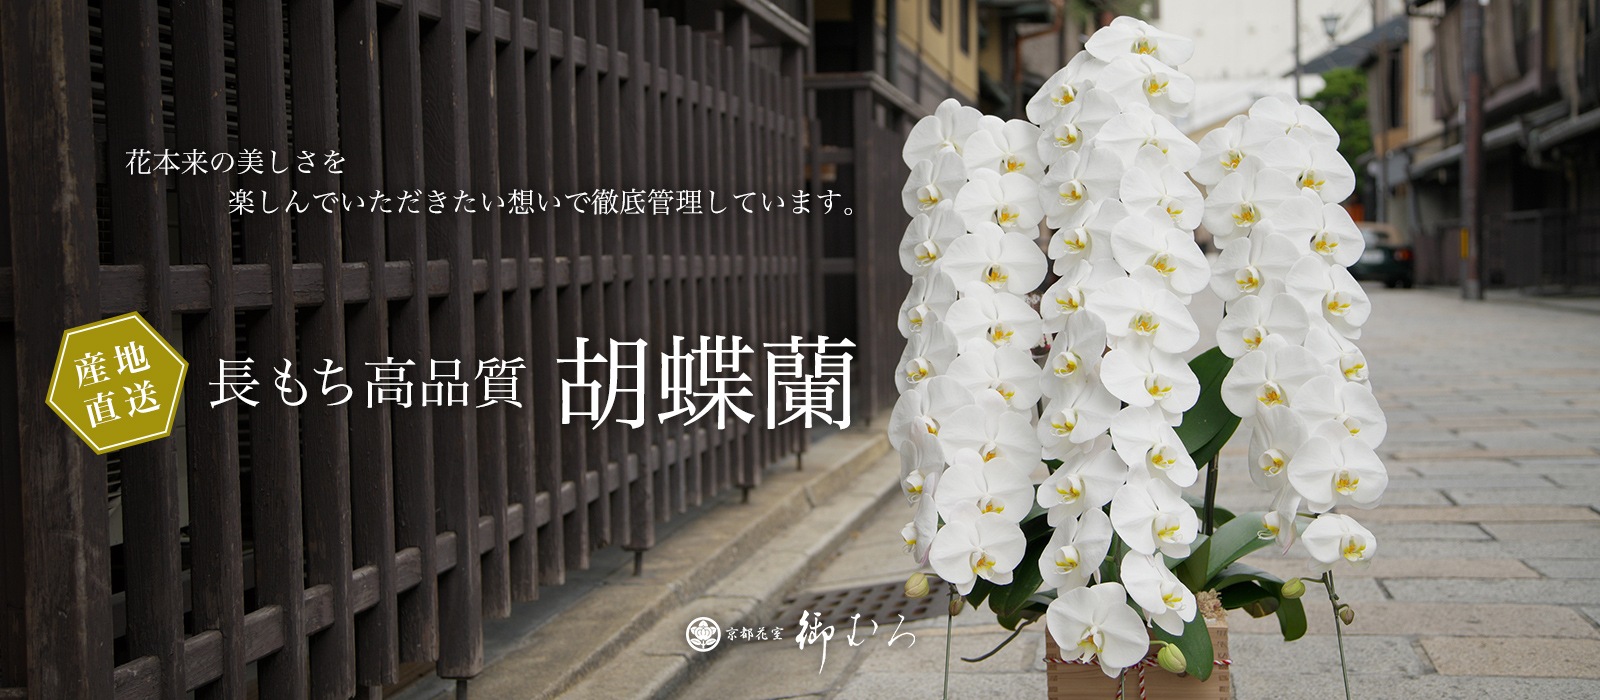 胡蝶蘭専門の京都花室おむろ 宅配やフラワーギフト通販対応